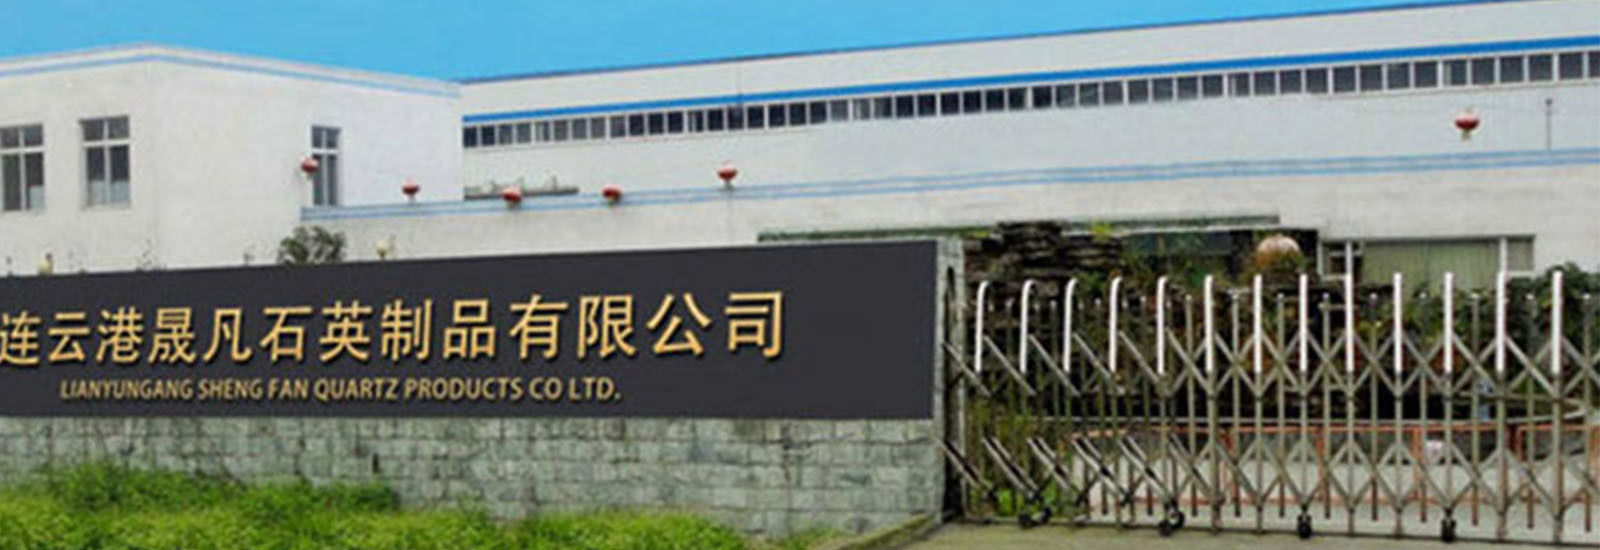 중국 Lianyungang Shengfan Quartz Product Co., Ltd 회사 프로필